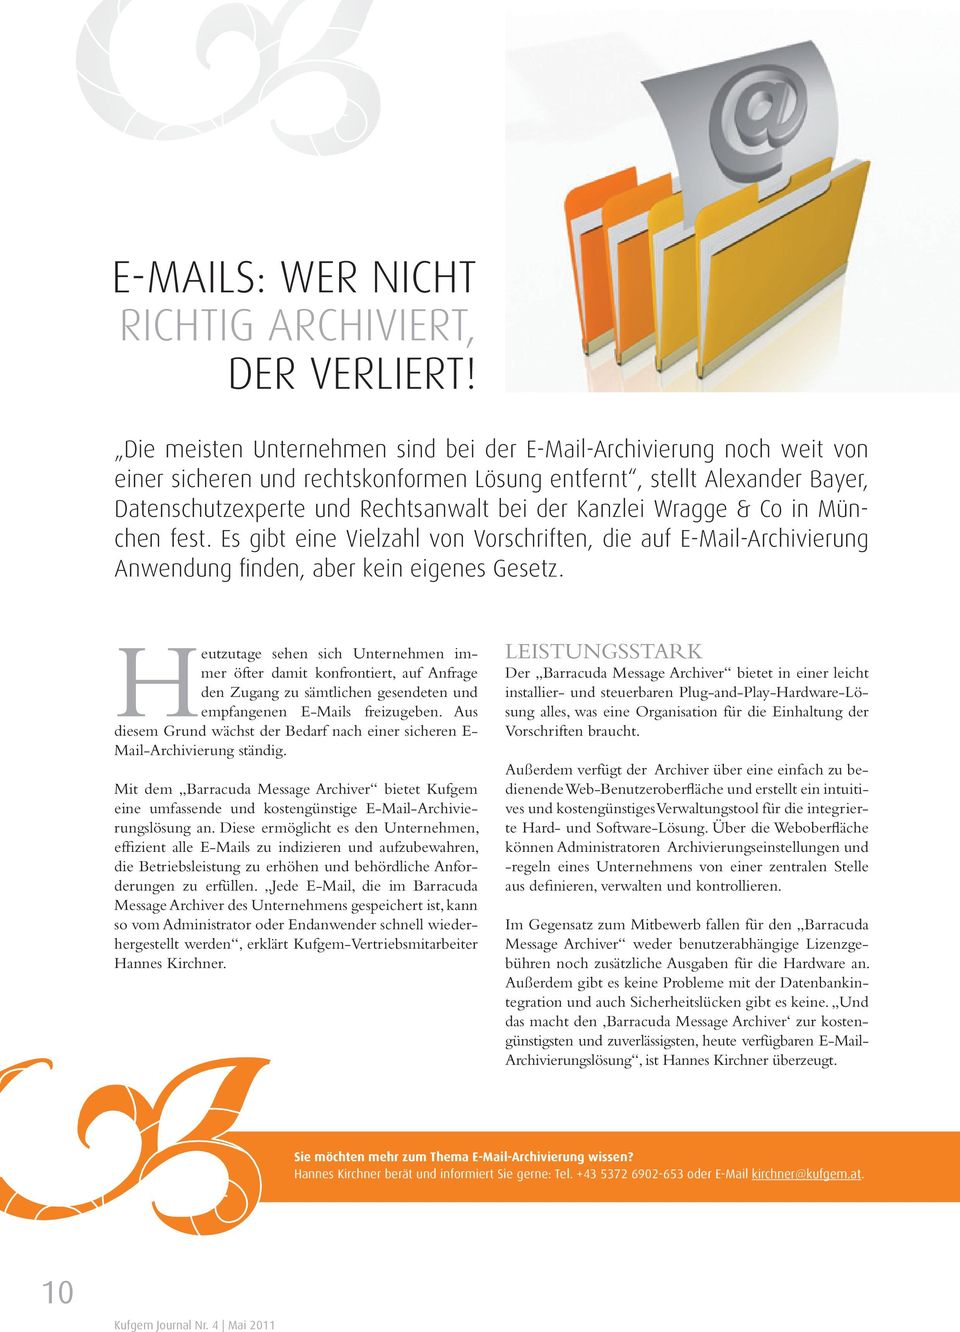 Wragge & Co in München fest. Es gibt eine Vielzahl von Vorschriften, die auf E-Mail-Archivierung Anwendung finden, aber kein eigenes Gesetz.